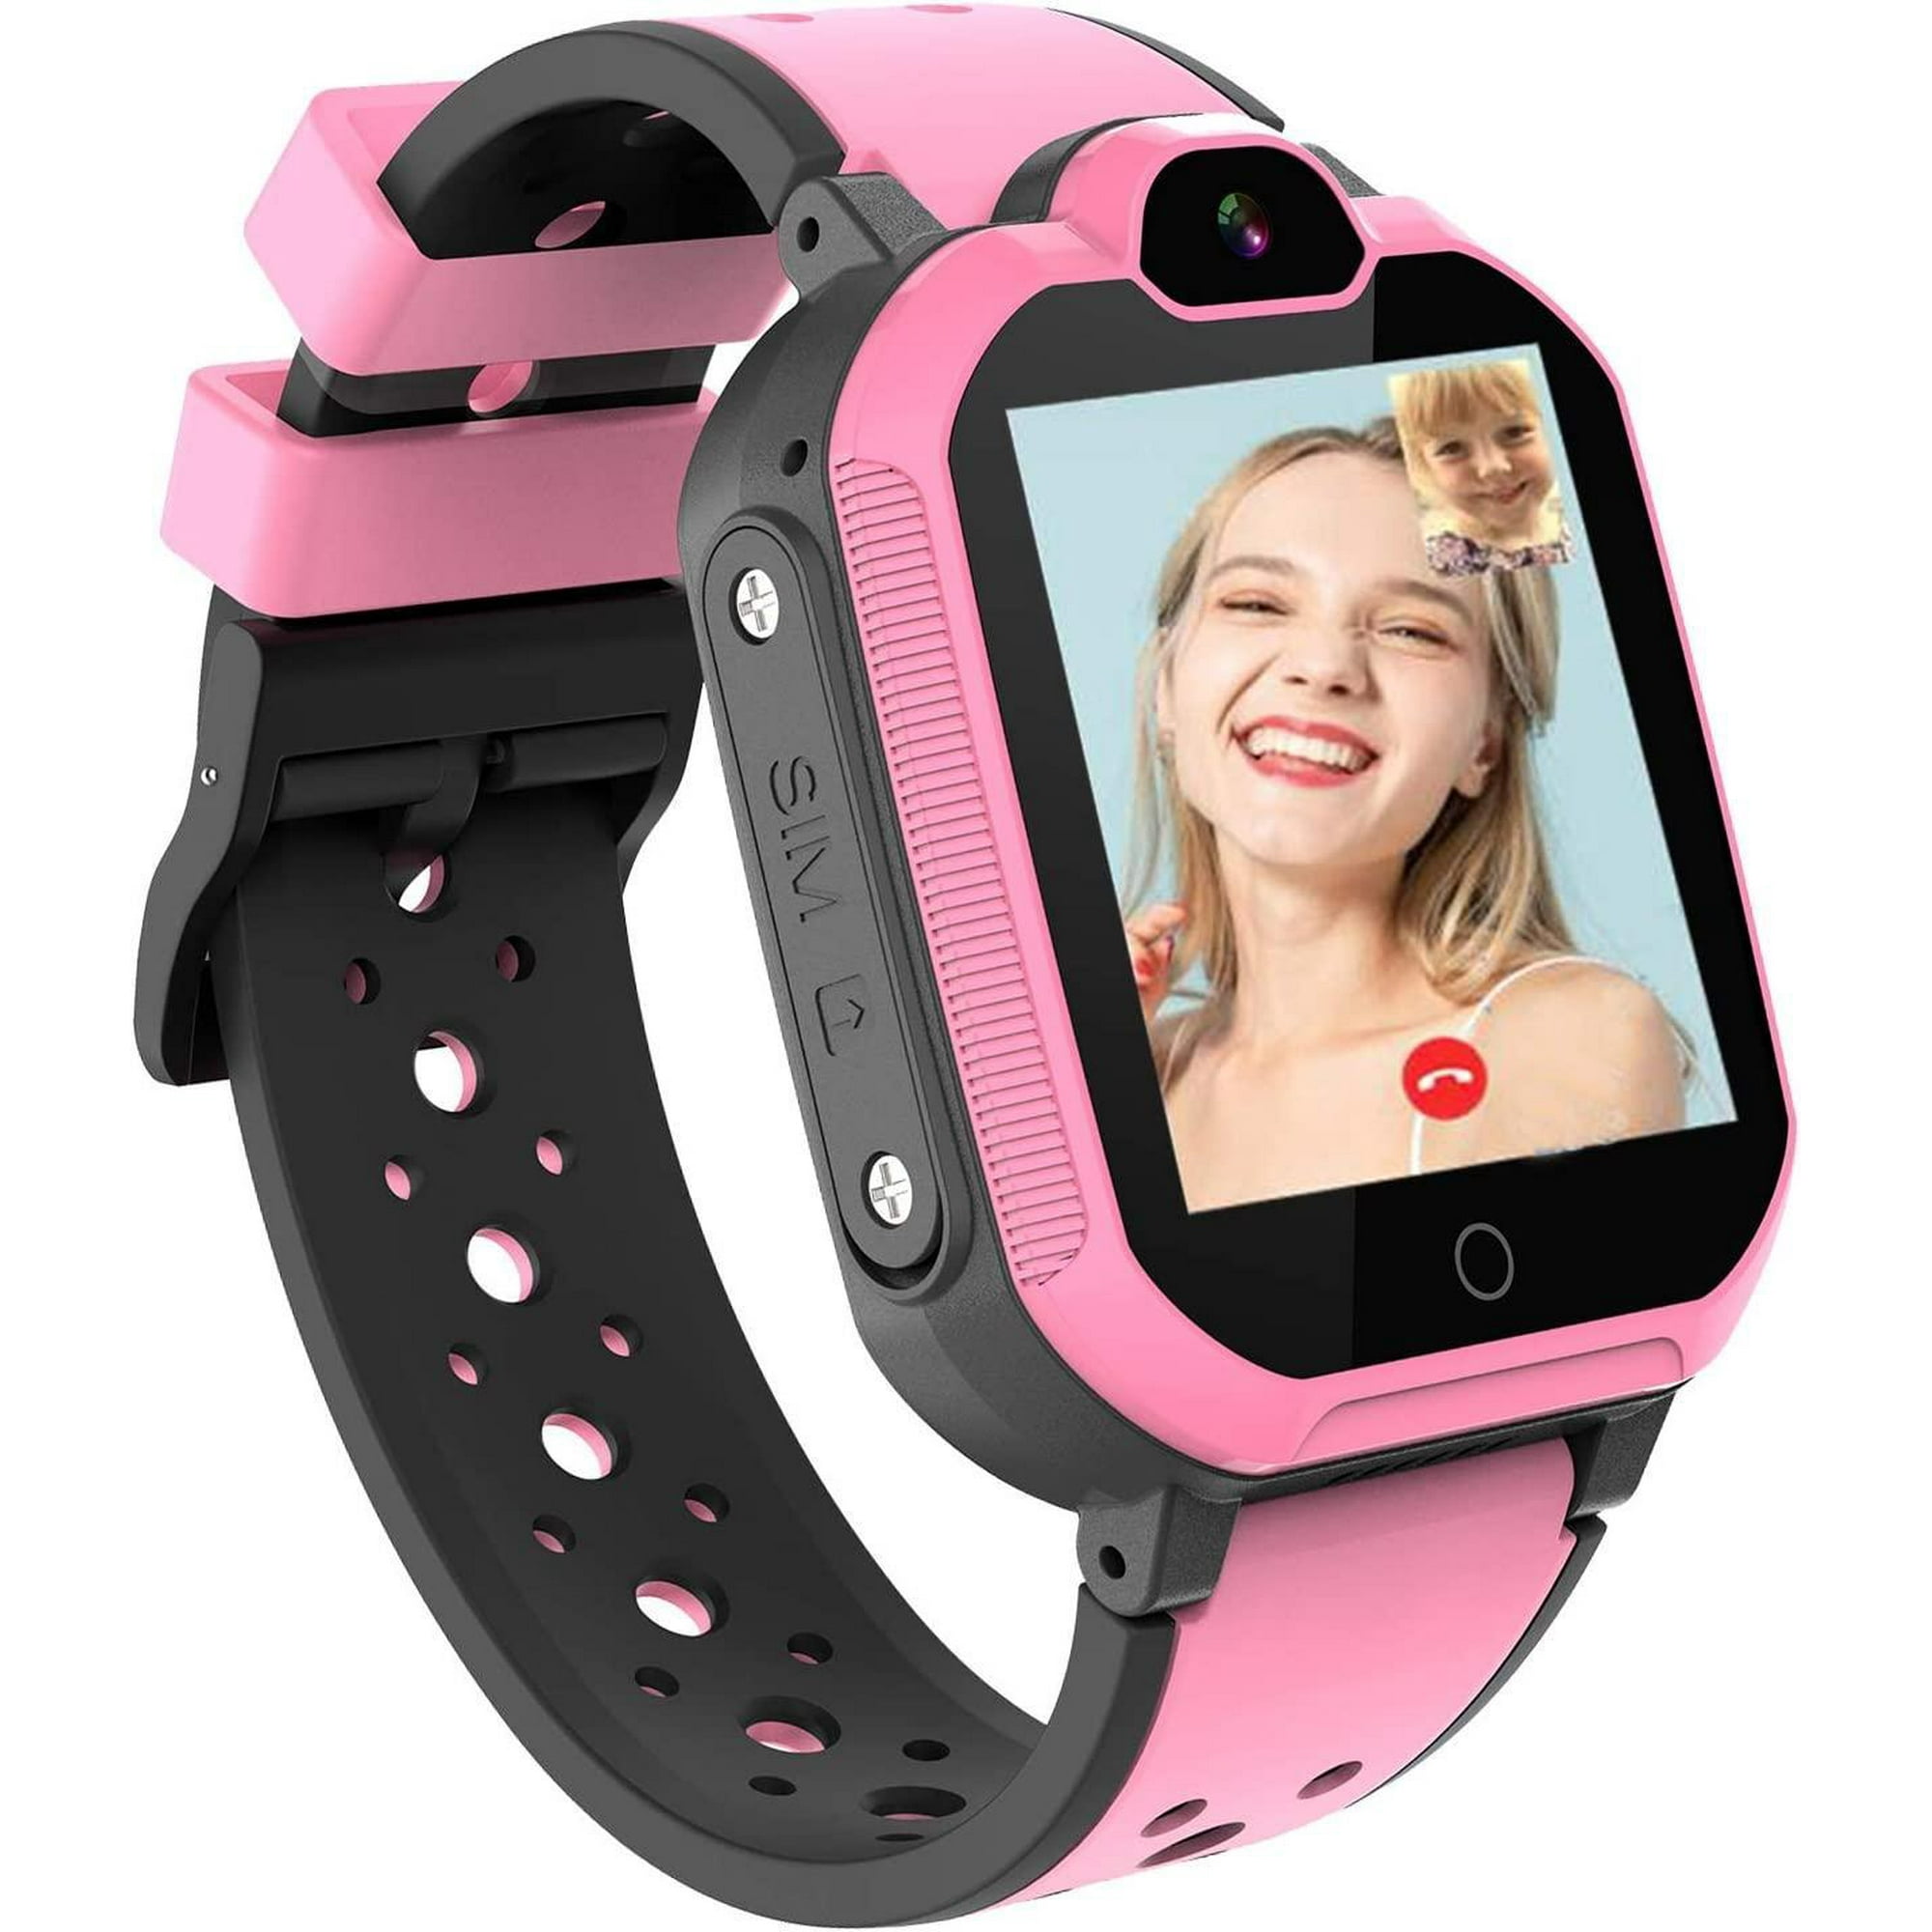 Smartwatch niñ@s con video llamadas 4G y localización rosa